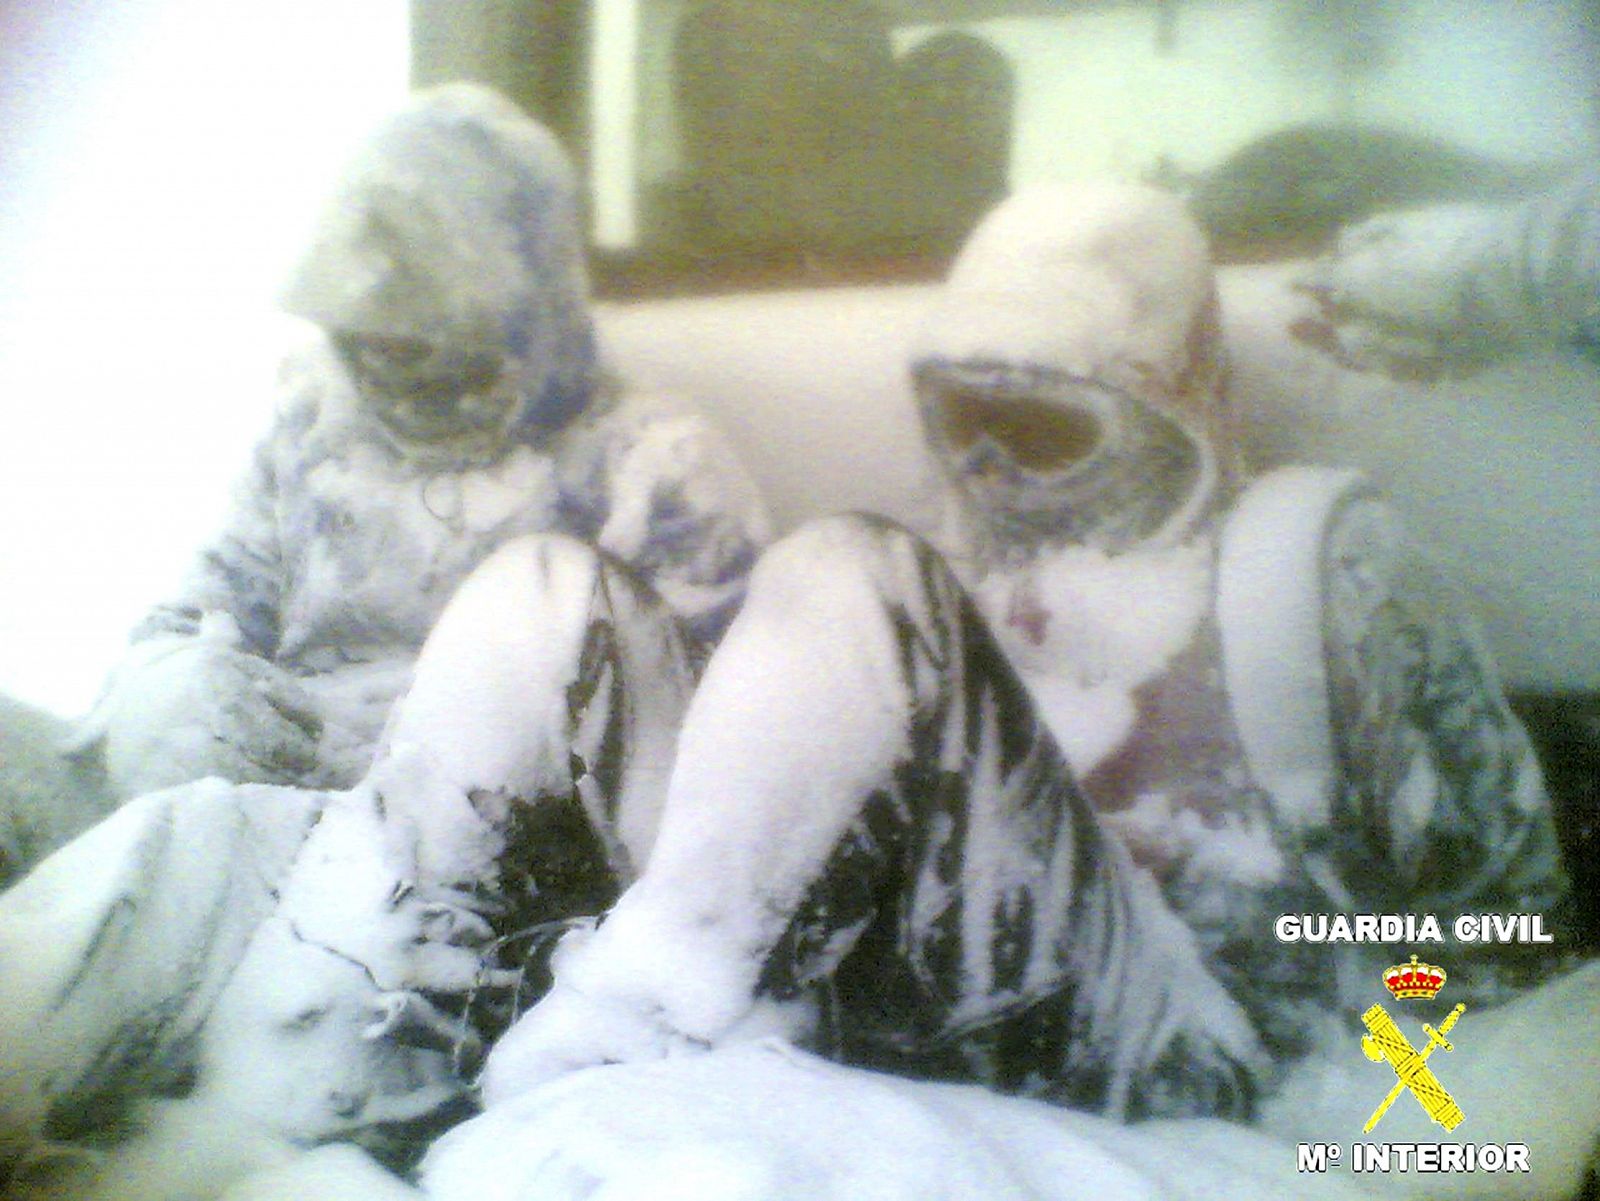 Los tres montañeros fueron encontrados cubiertos por la nieve, después de haberse perdido en el barranco Calamentío.